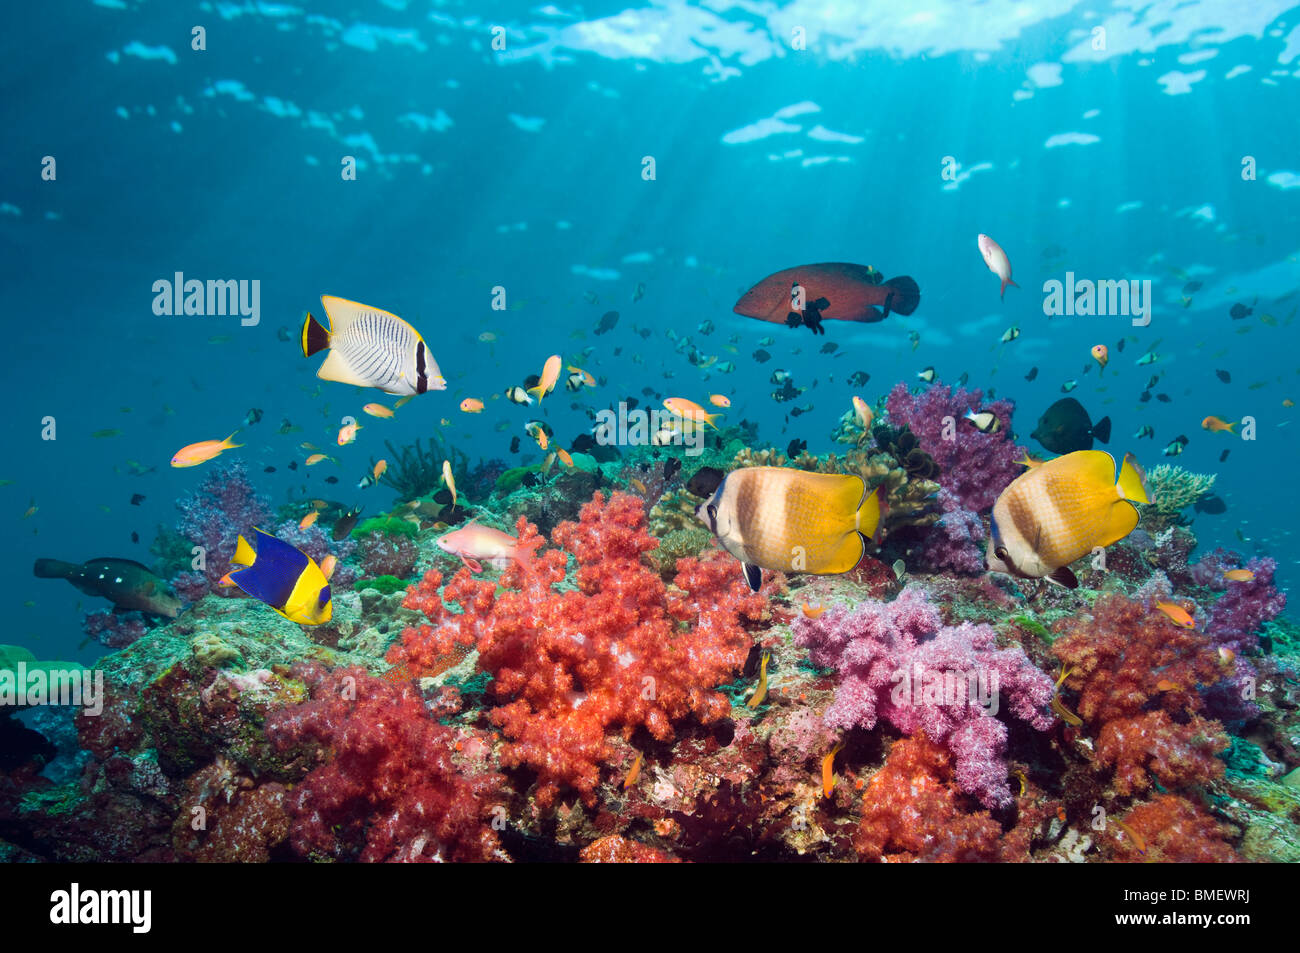 Klein nuoto butterflyfish sulla barriera corallina con coralli molli. Mare delle Andamane, Thailandia. Foto Stock